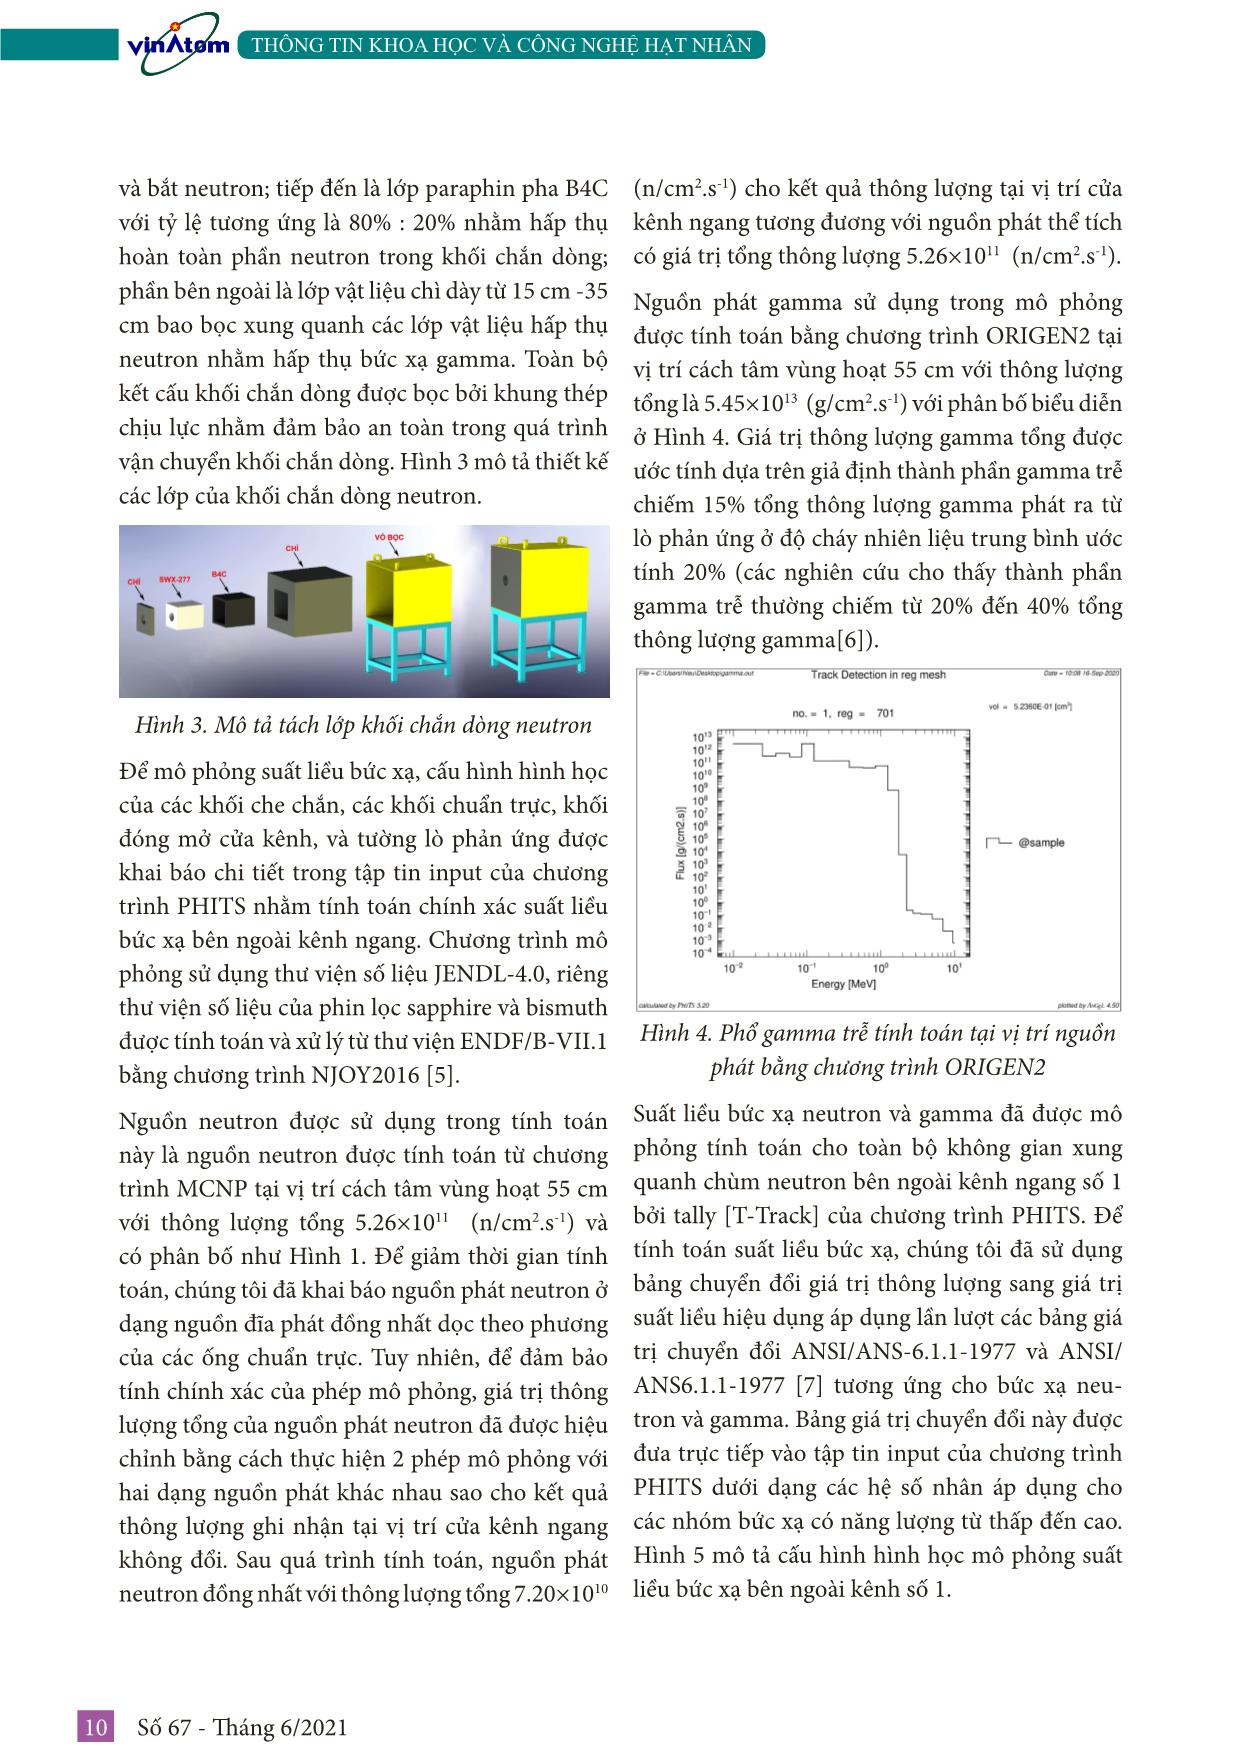 Thiết kế che chắn an toàn bức xạ trên kênh ngang số 1 của lò phản ứng hạt nhân Đà Lạt trang 3